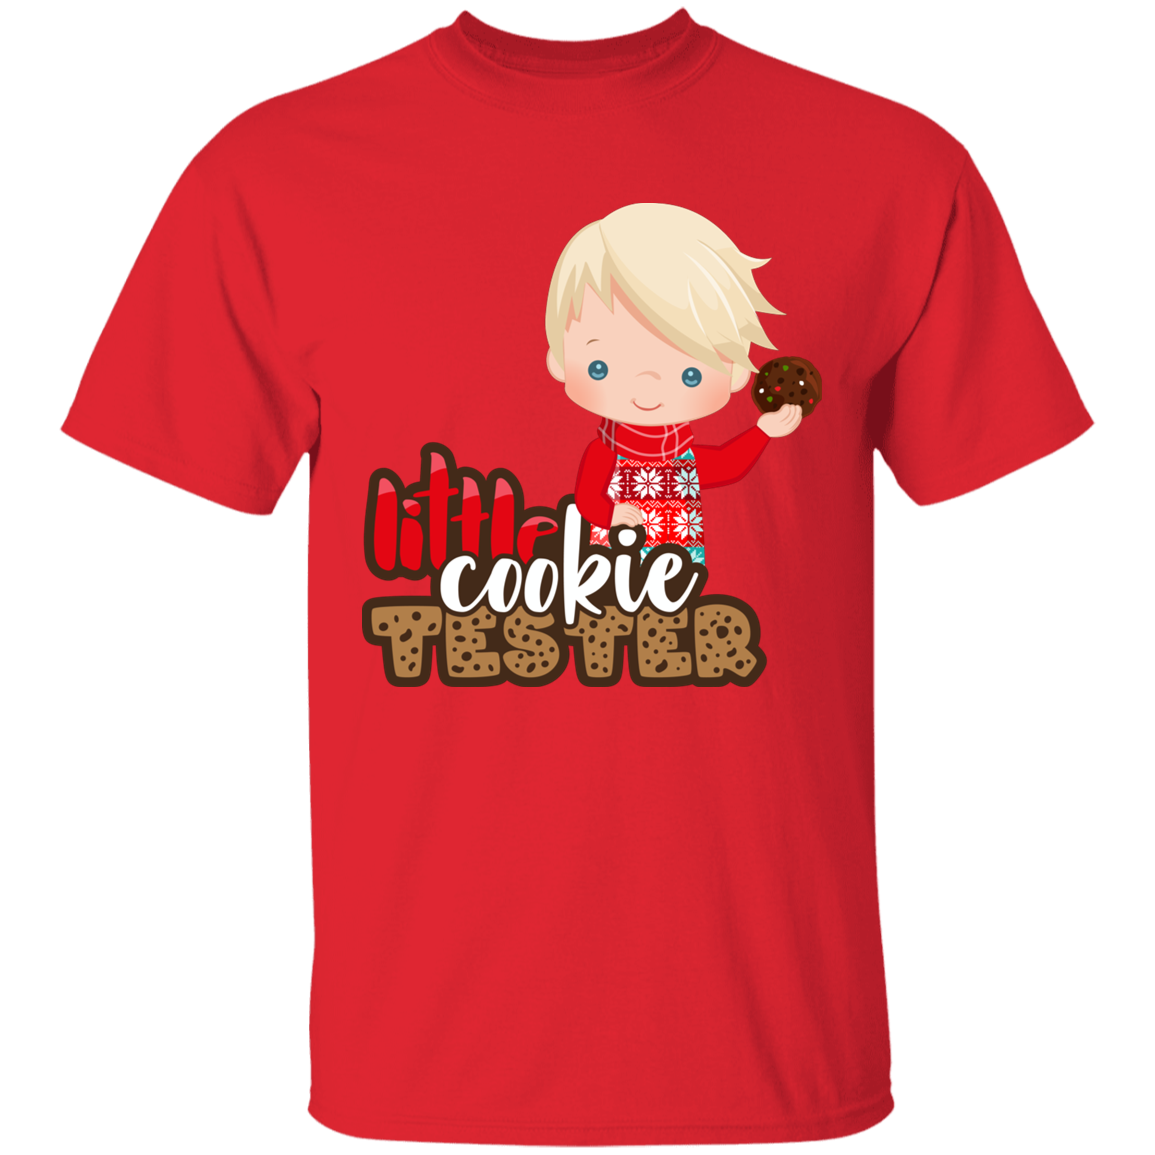 Little Cookie Test Blonde Boy 100% Cotton T-Shirt